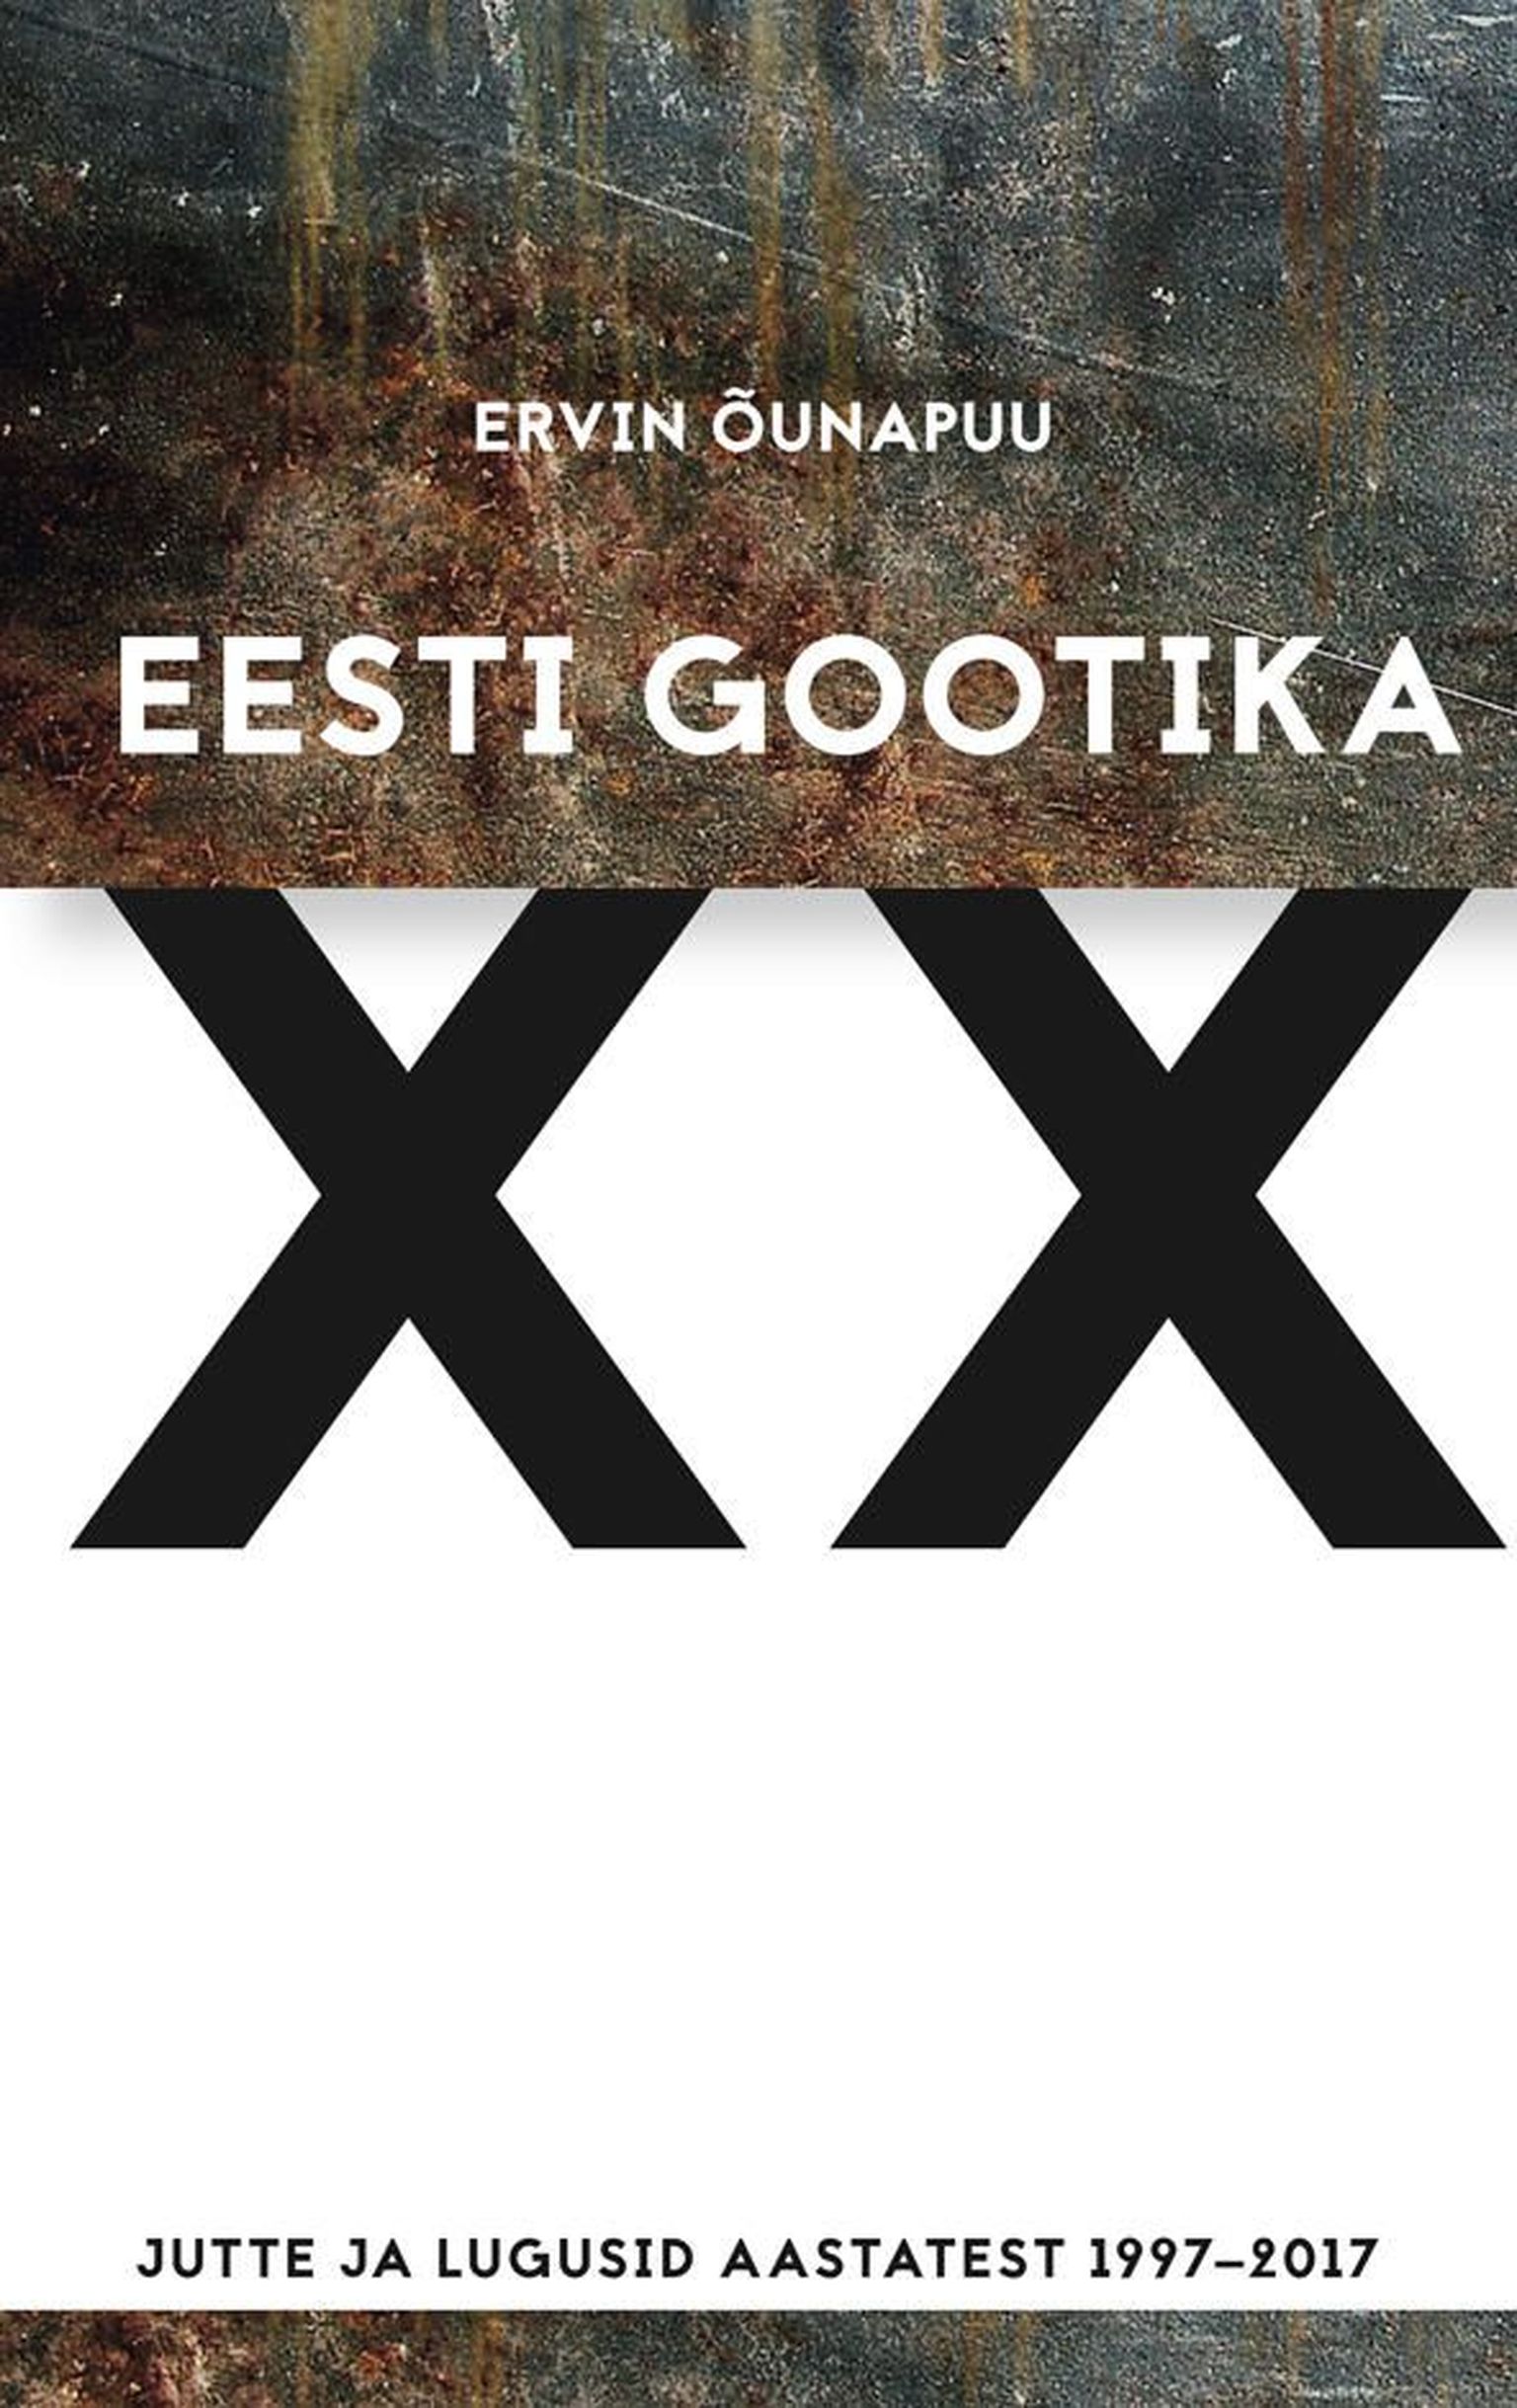 «Eesti gootika XX: jutte ja lugusid aastatest 1997–2017»